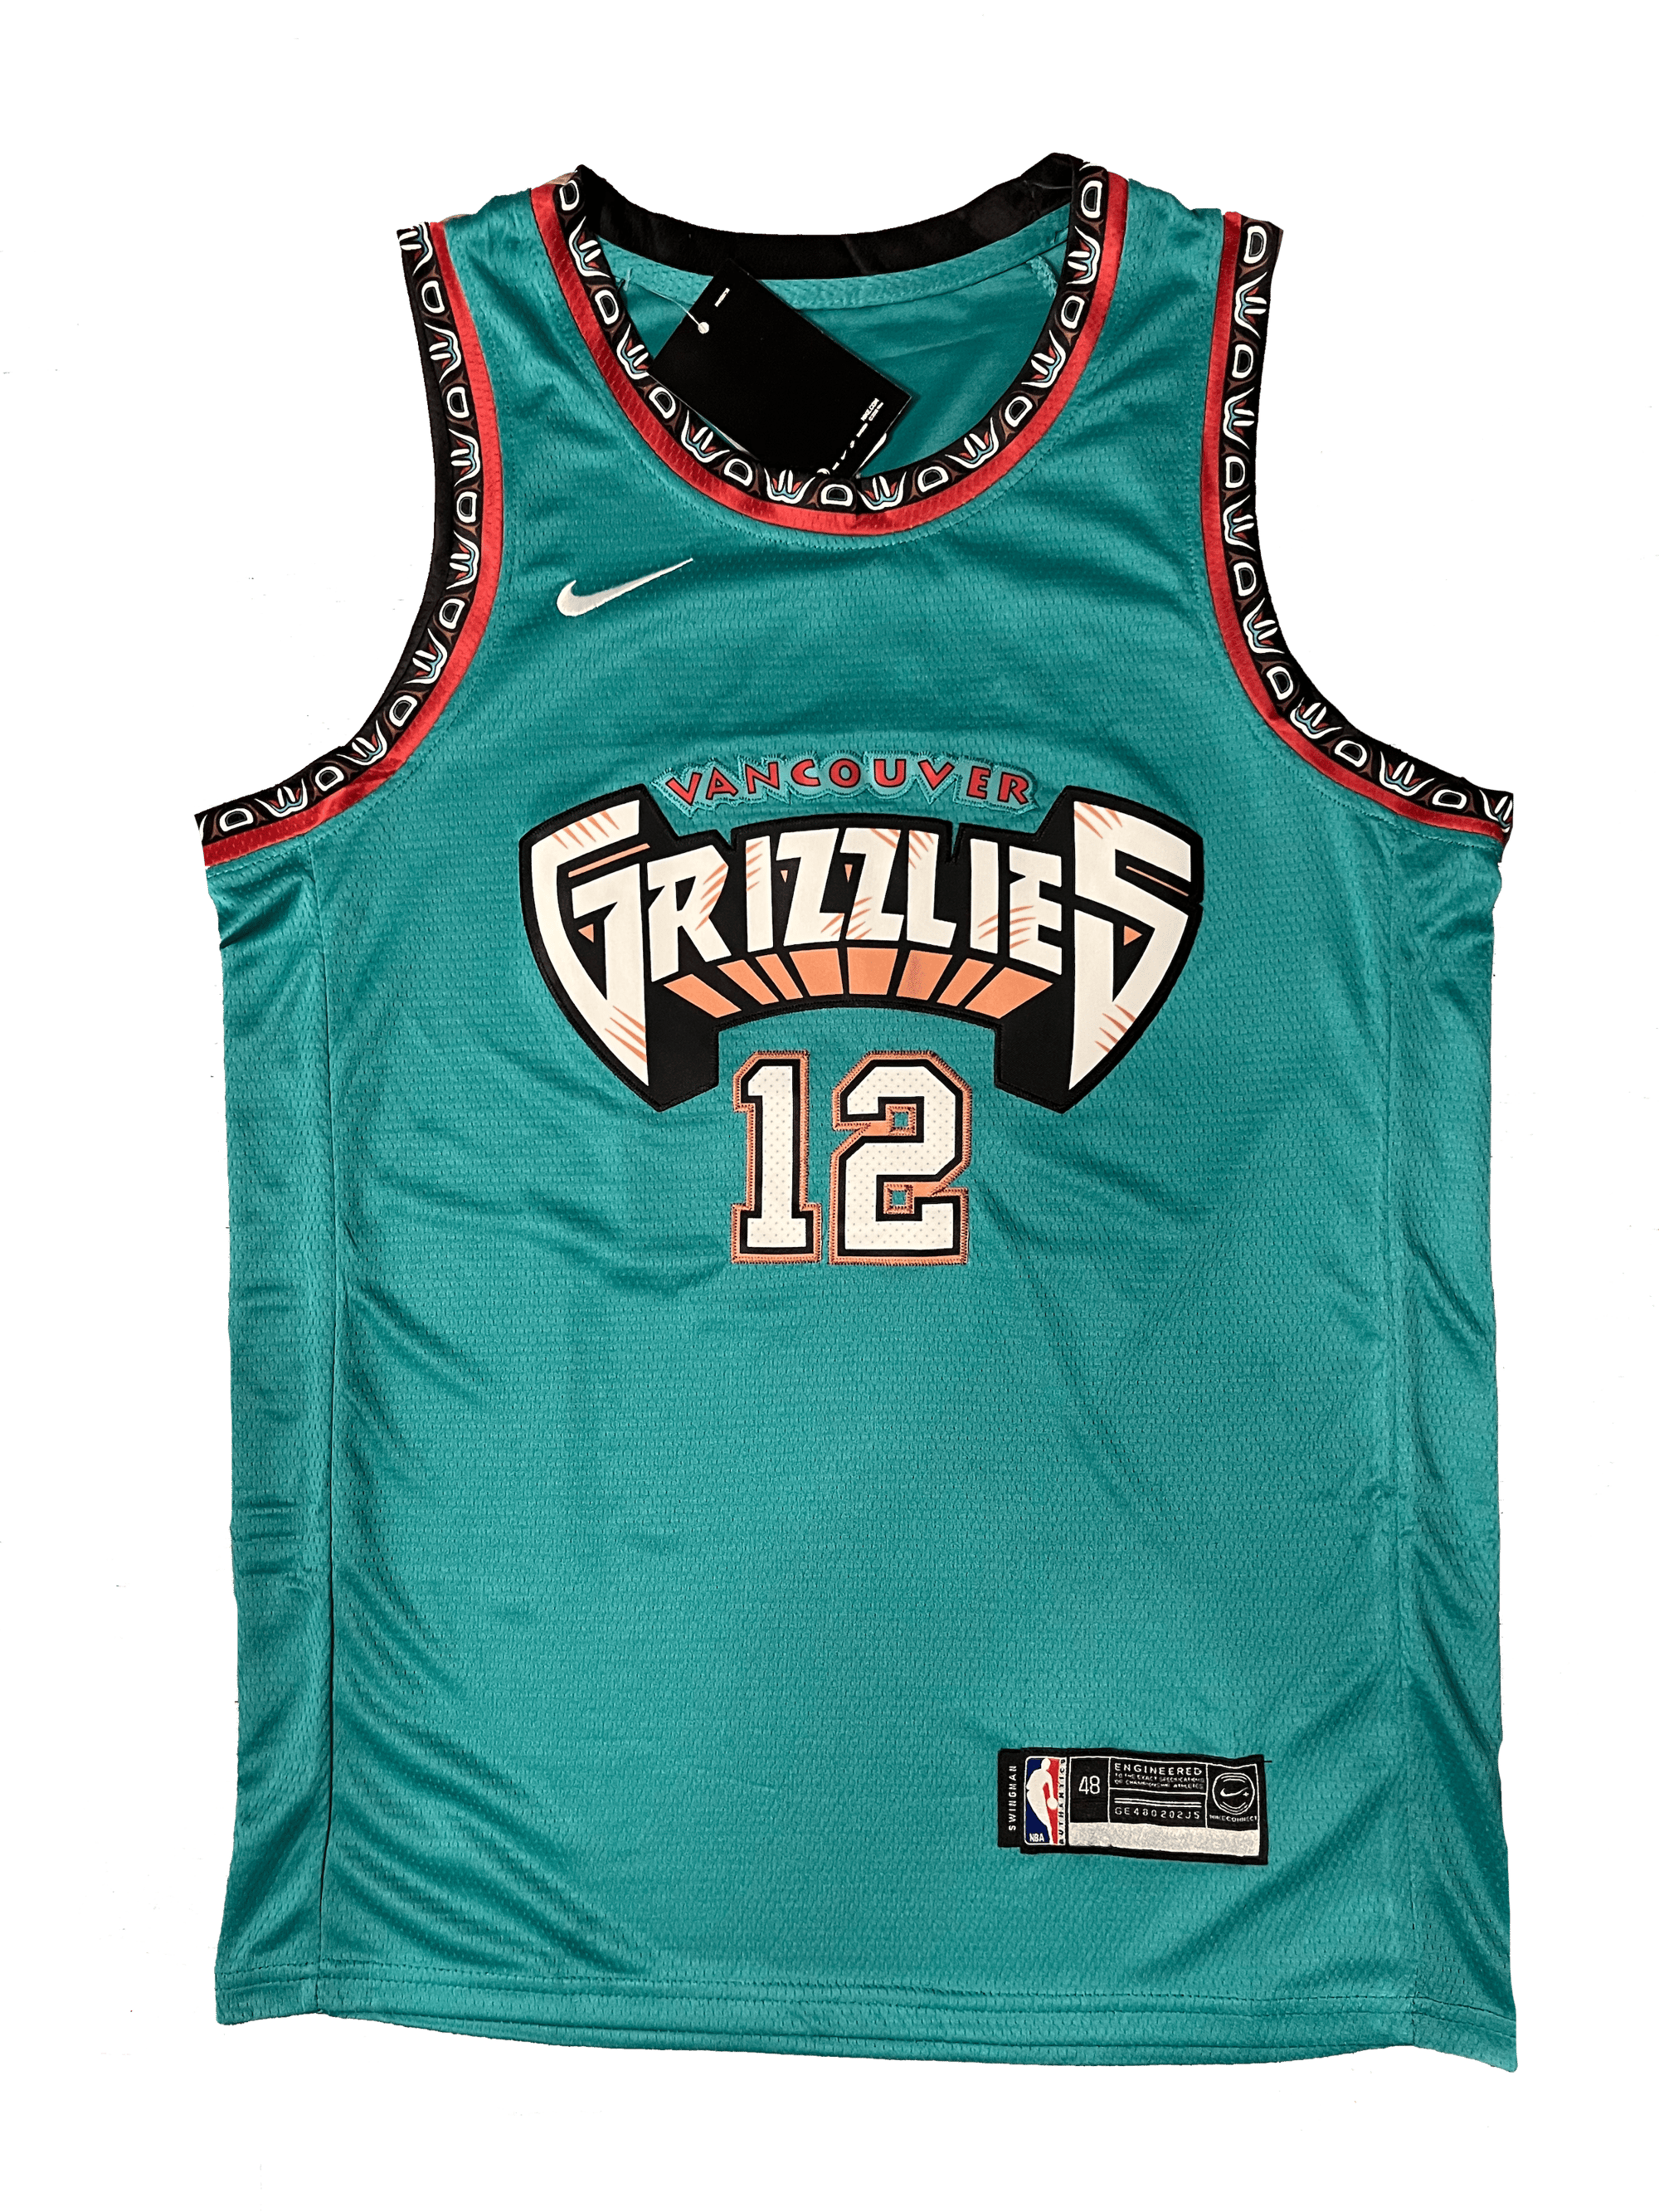 memphis grizzlies jersey for sale